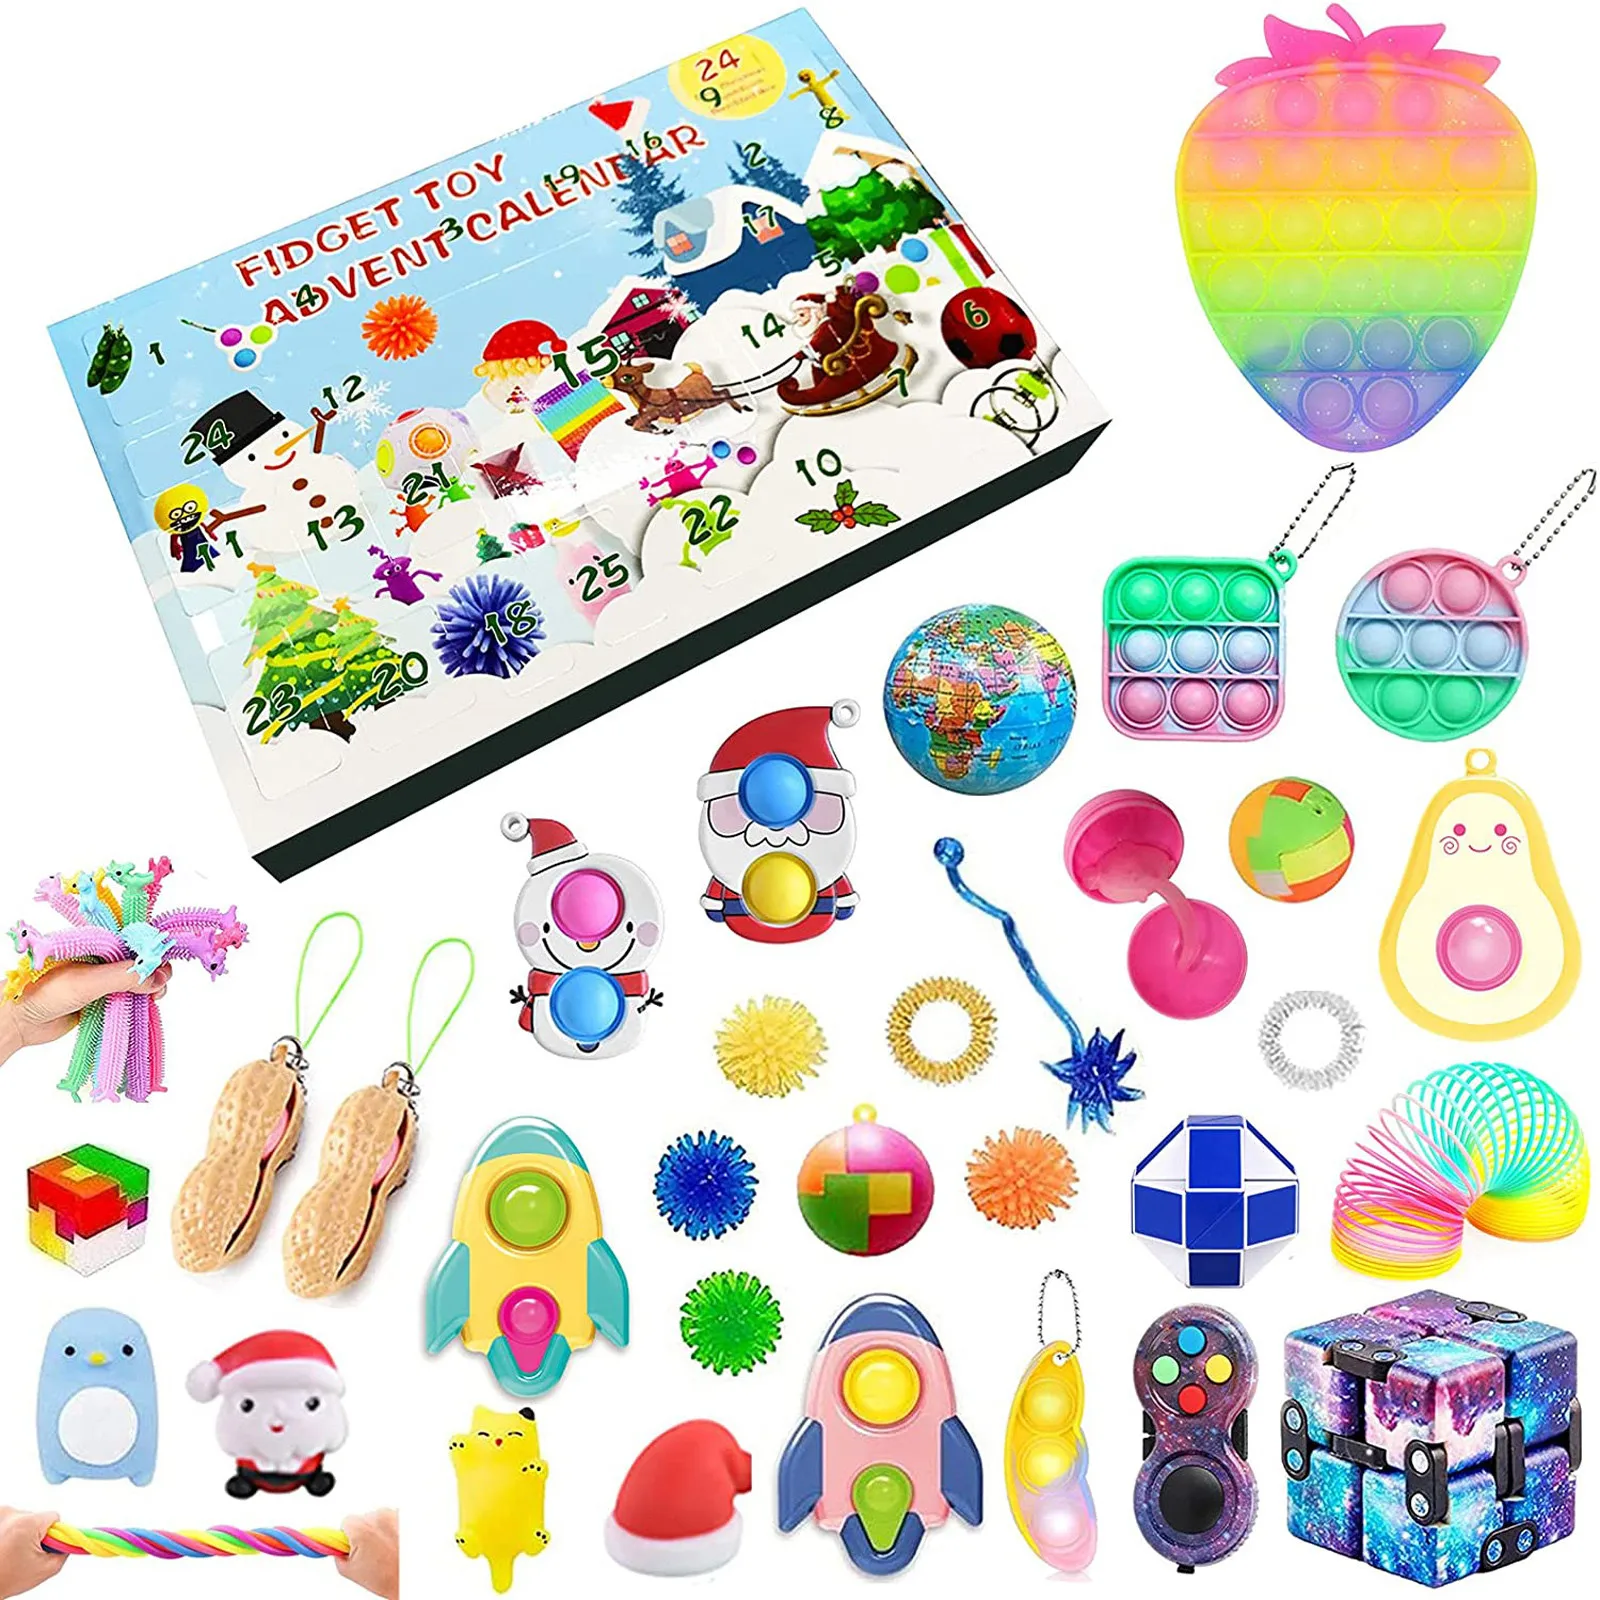 

Autism Squeeze Funny Calendar Christmas Tree Antistress Stress Relief Toys Fidget Sensory Toy Children Gift zabawki dla dzieci